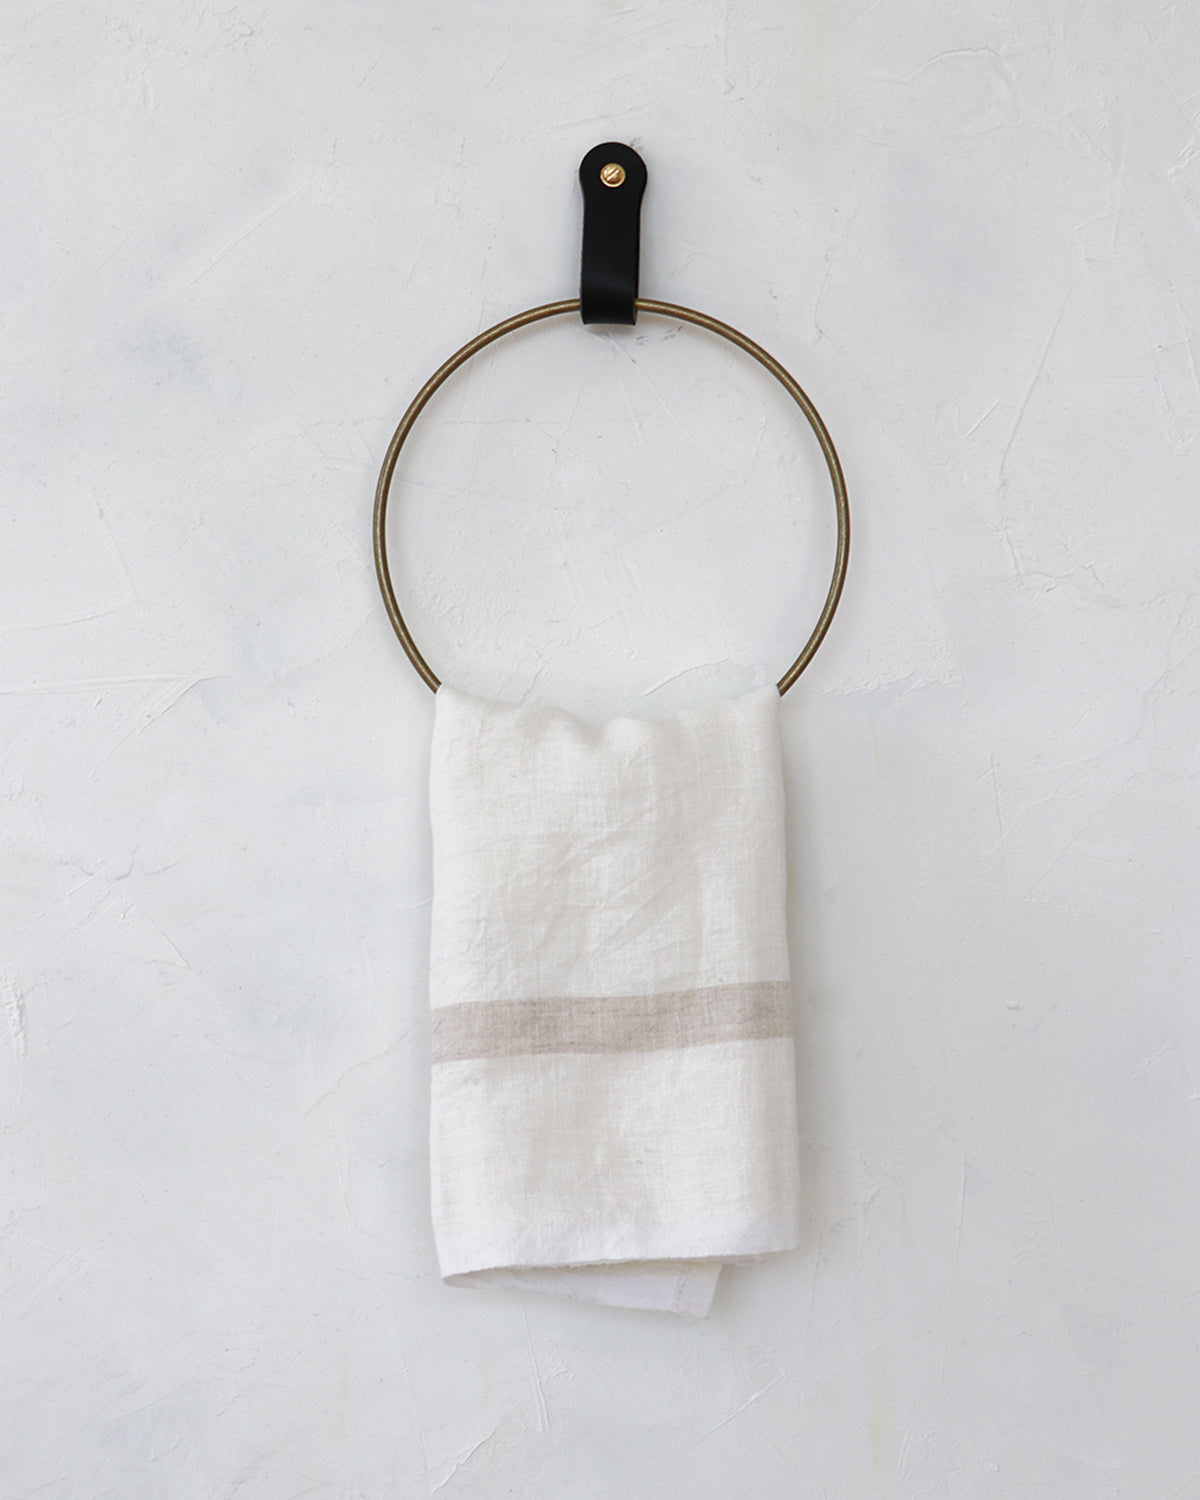 Ludlow Towel Ring - Black